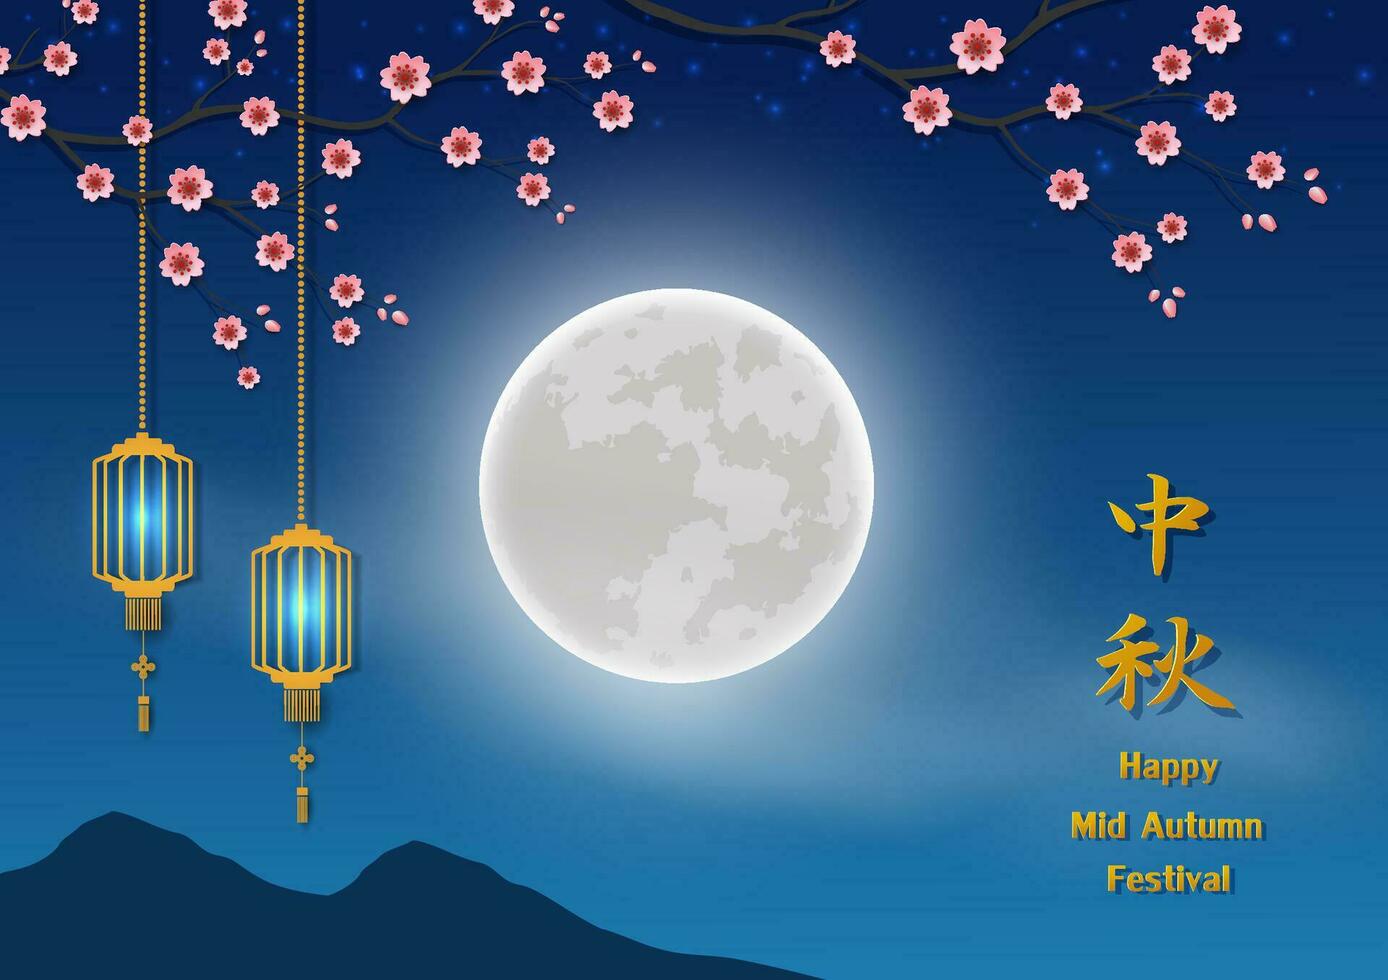 Mitte Herbst fest, feiern Thema mit voll Mond auf Kirsche blühen Nacht, chinesisch Übersetzen bedeuten Mitte Herbst Festival vektor